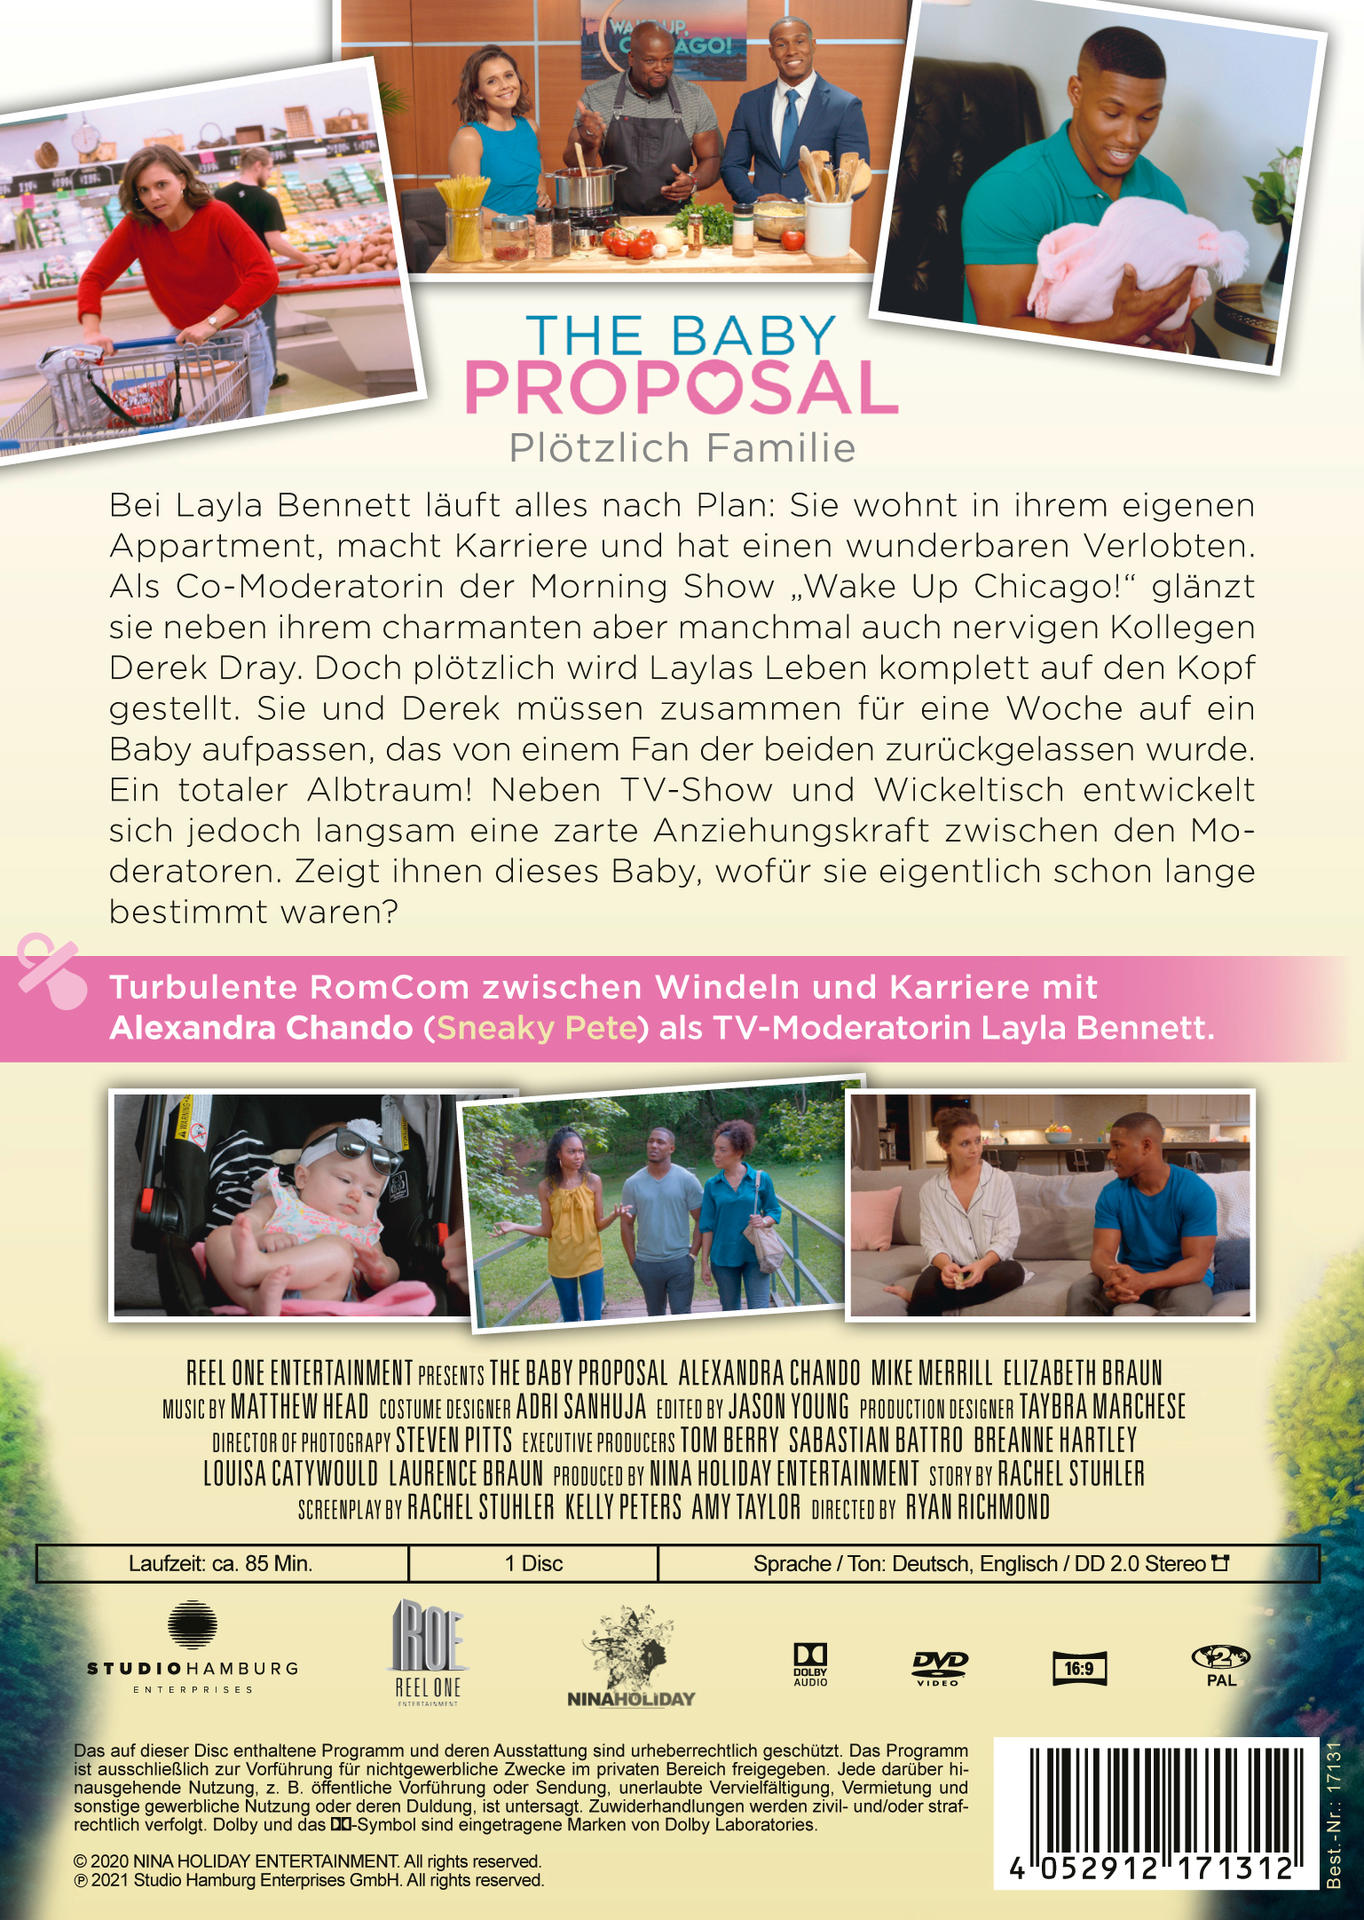 Baby - DVD The Plötzlich Familie Proposal